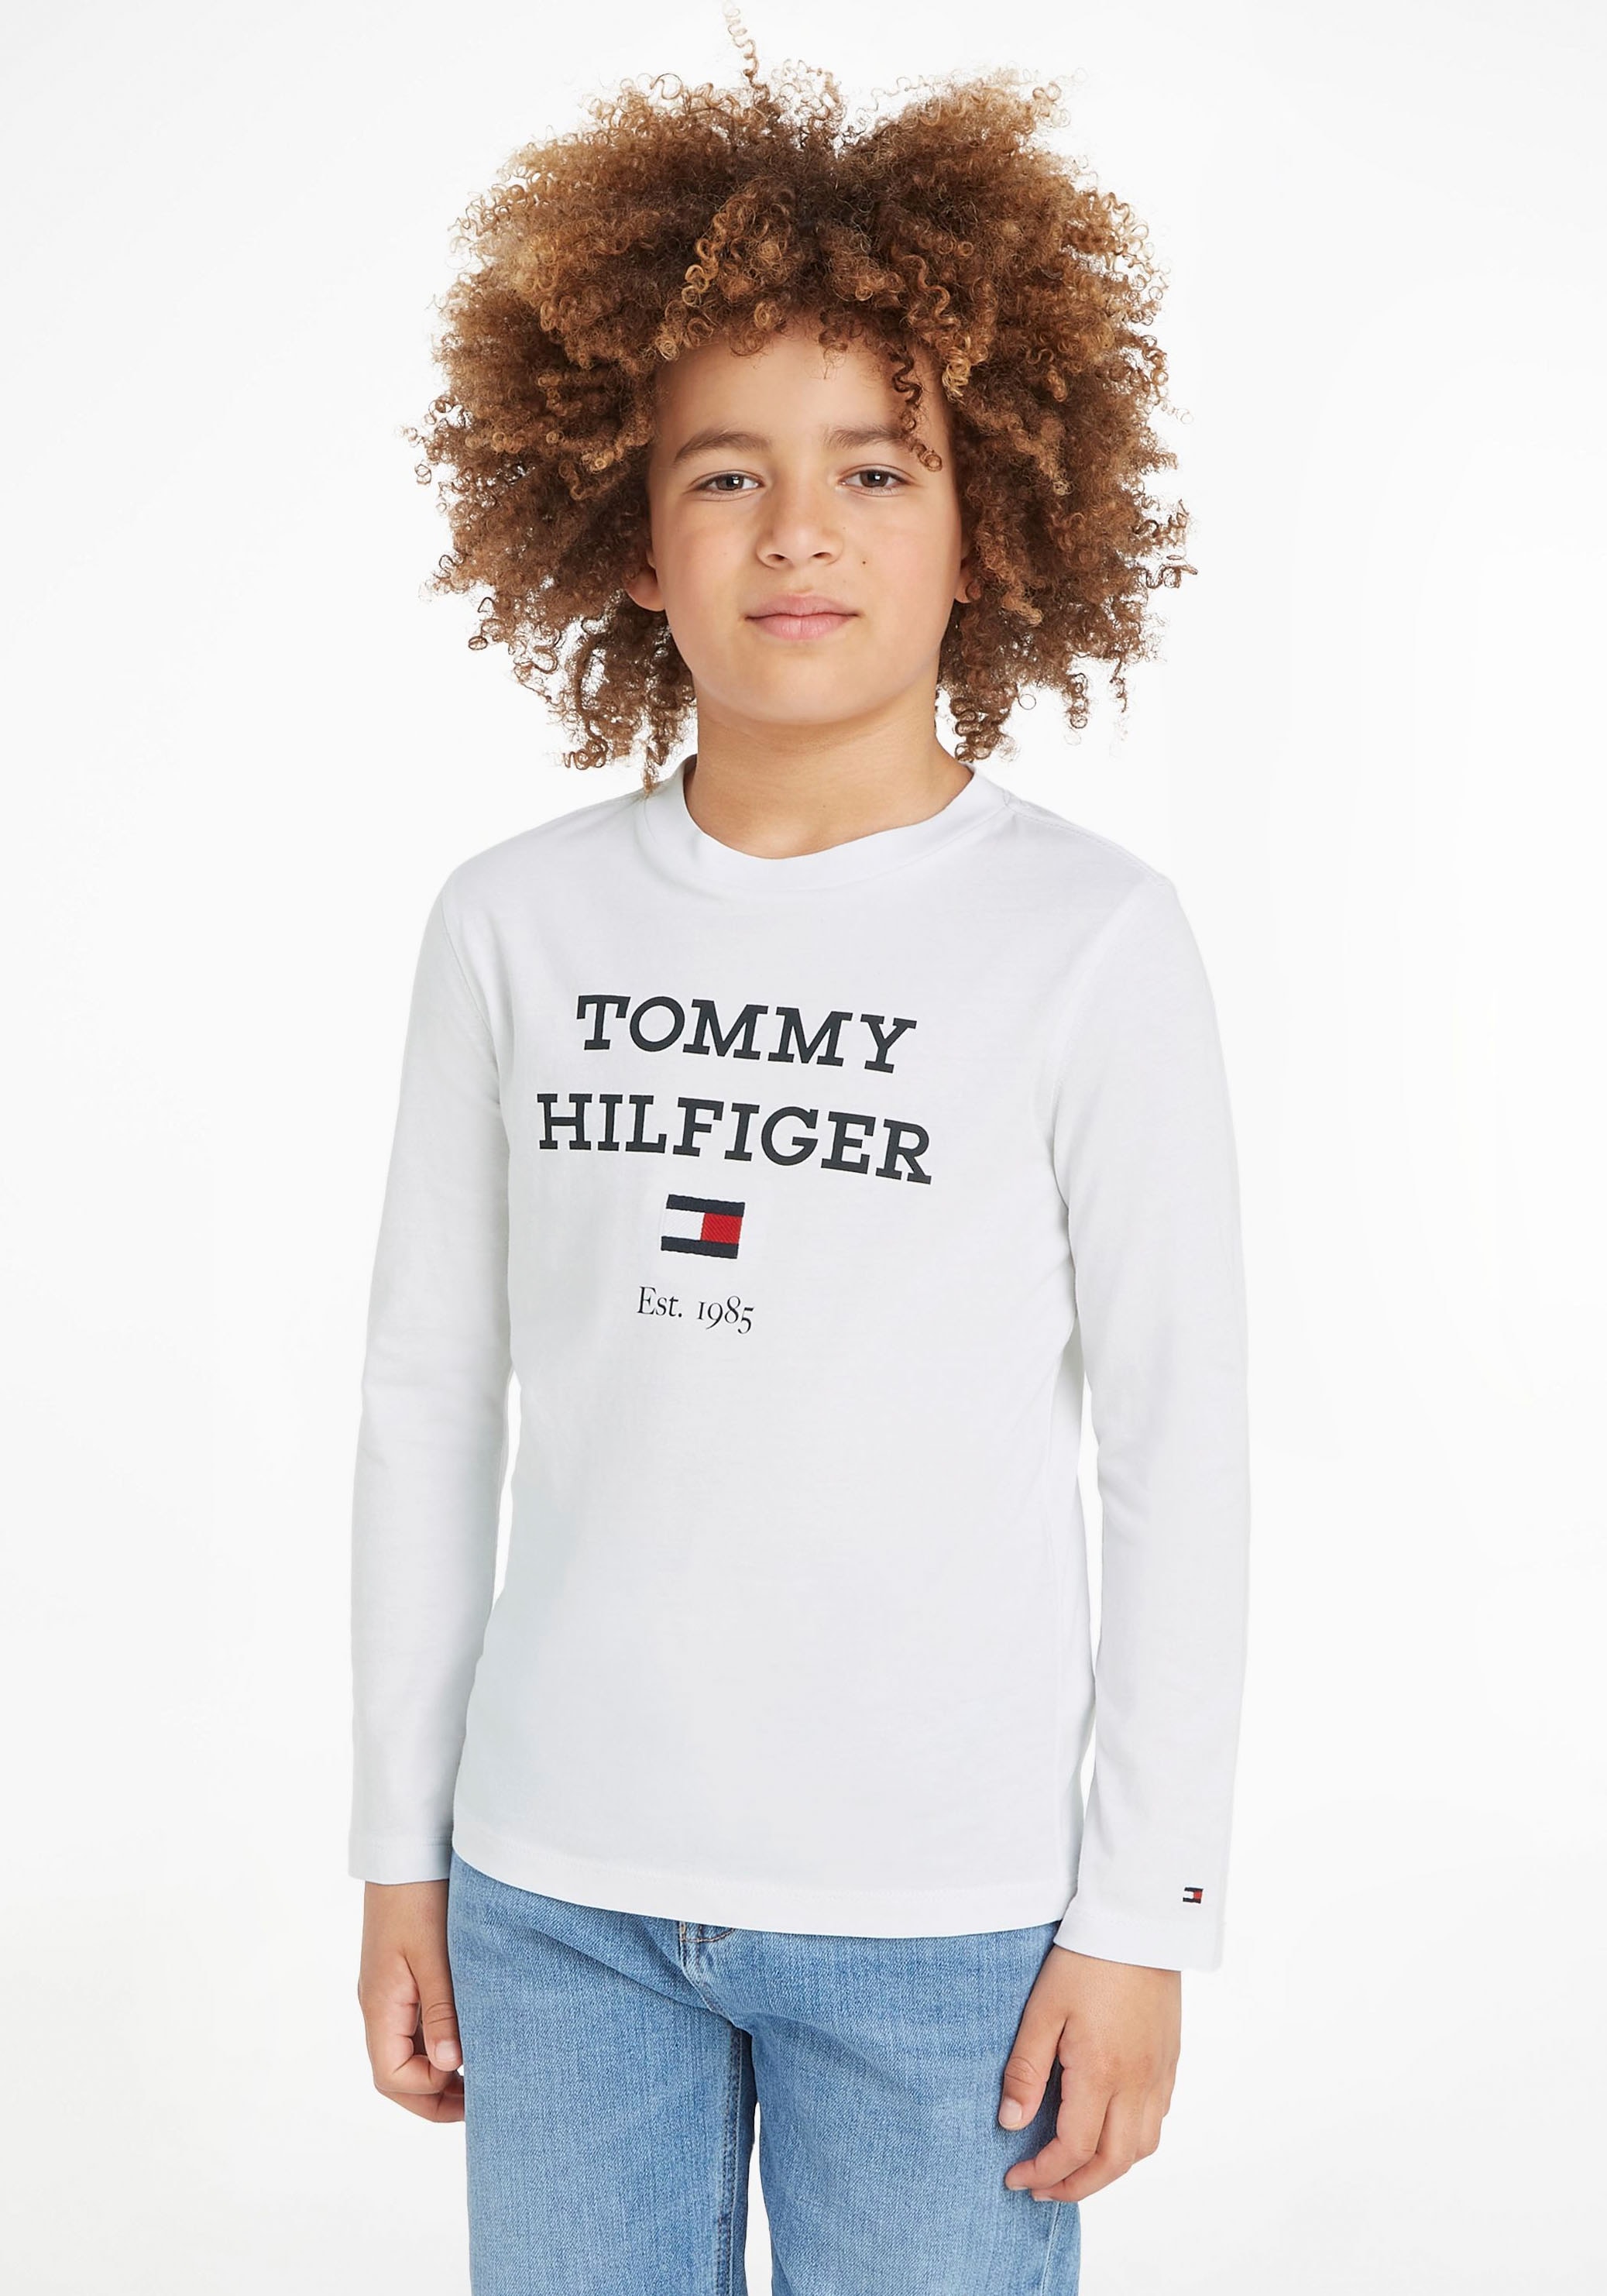 auf Logo Langarmshirt L/S«, Tommy Brust online kaufen Hilfiger mit LOGO großem »TH der TEE